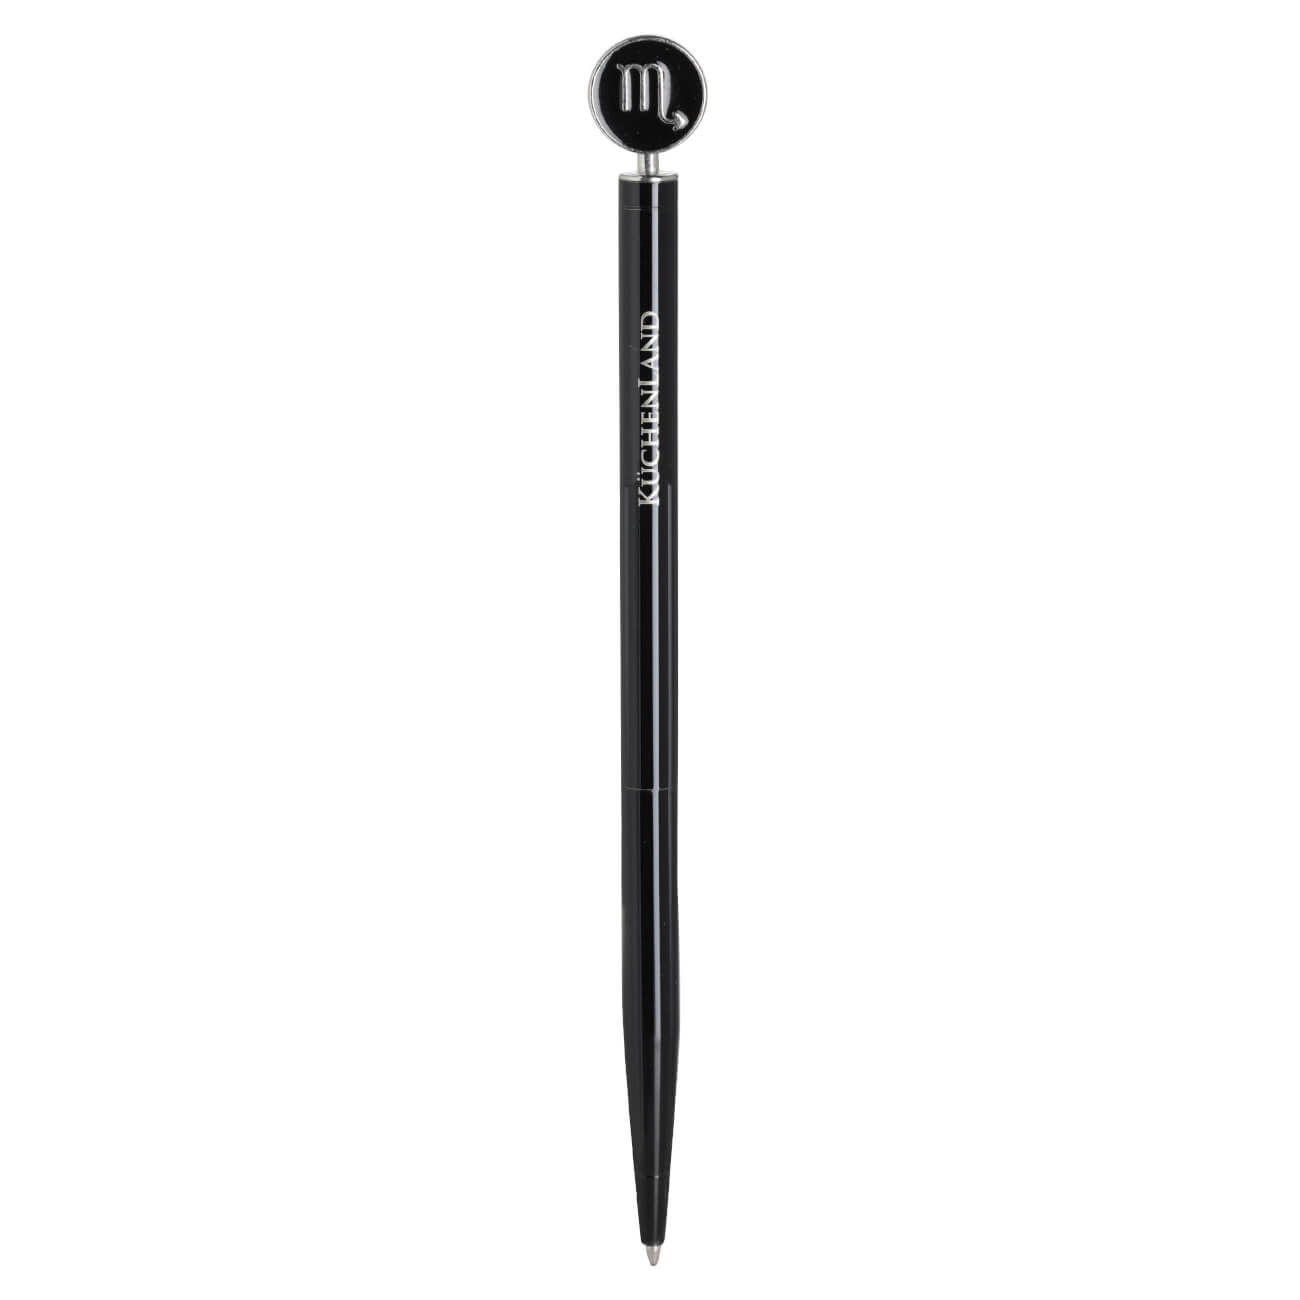 Ручка шариковая, 15 см, с фигуркой, сталь, черно-серебристая, Скорпион, Zodiac dueto gun ручка стилус